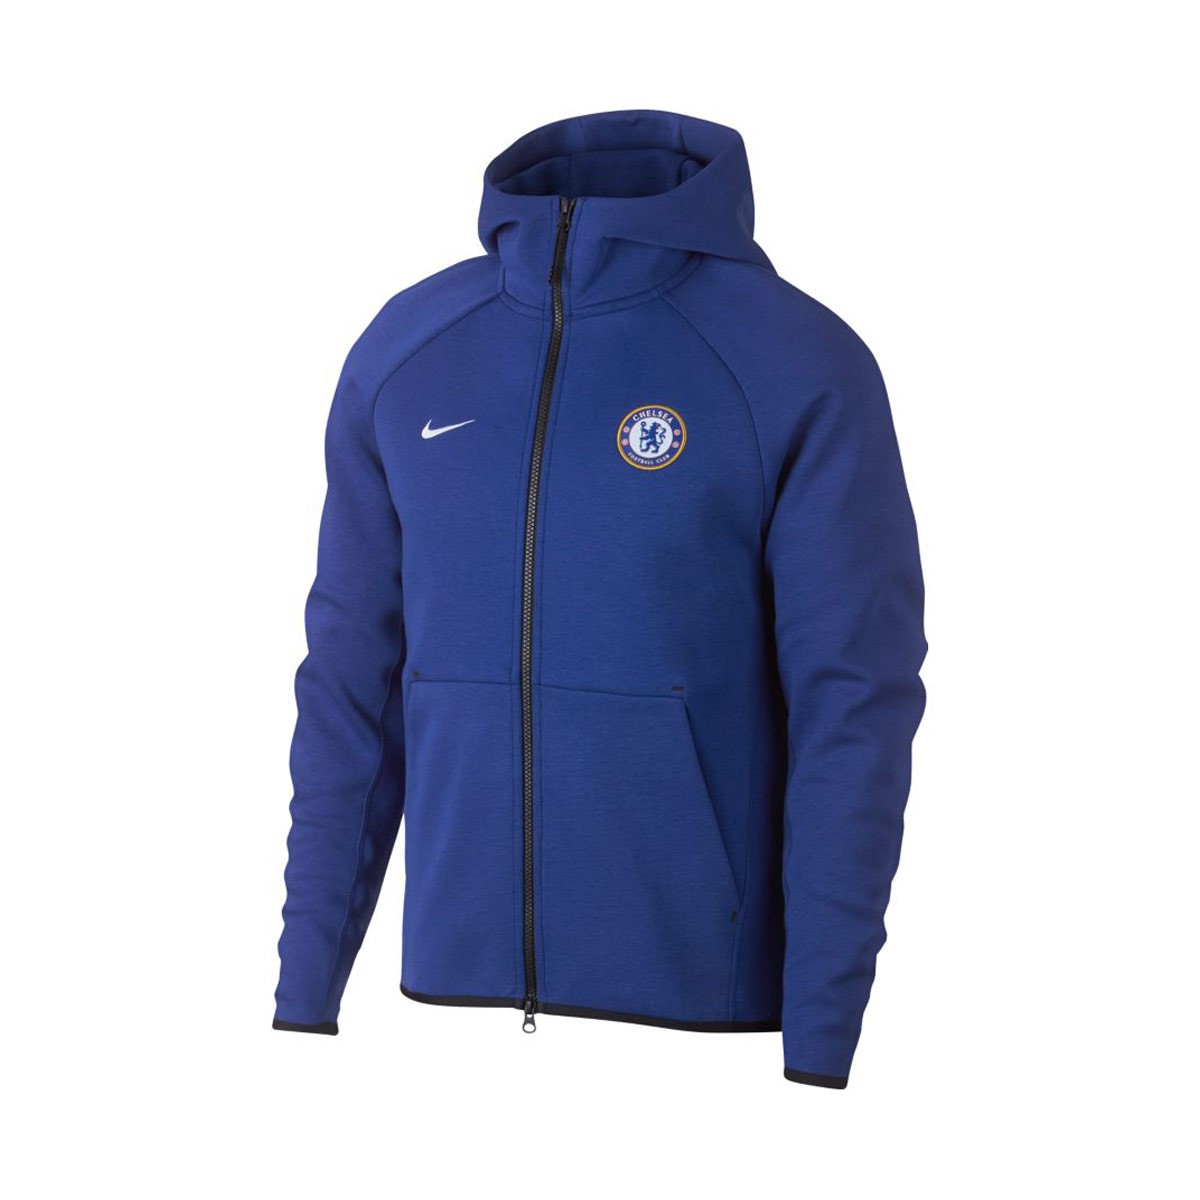 Jacket Nike NSW Chelsea FC Tech Fleece 